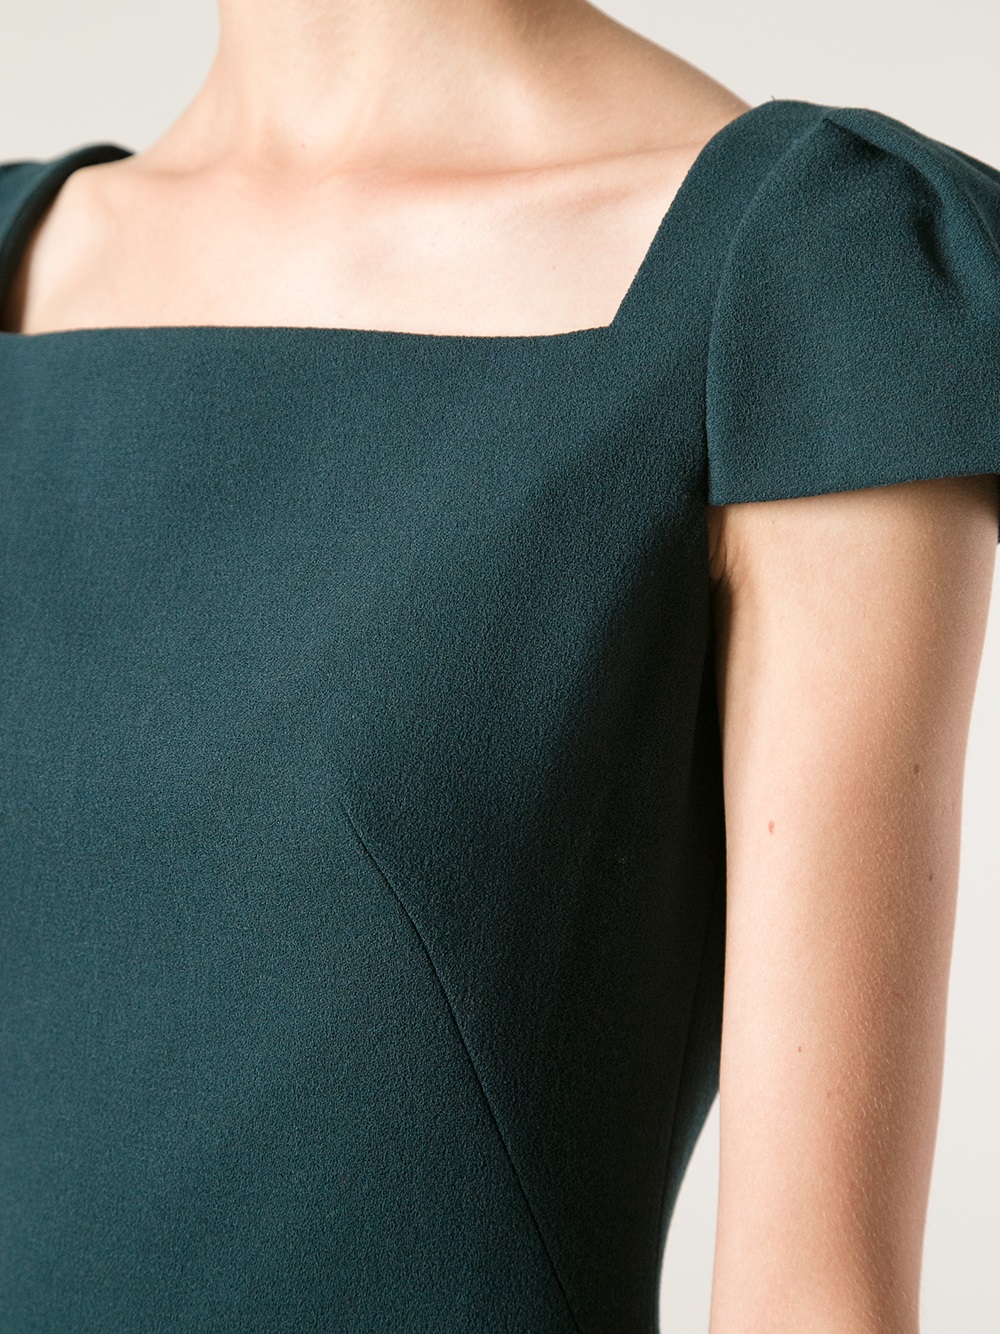 Lyst - Alexander mcqueen Crepe Cap Sleeve Mini Dress in Green